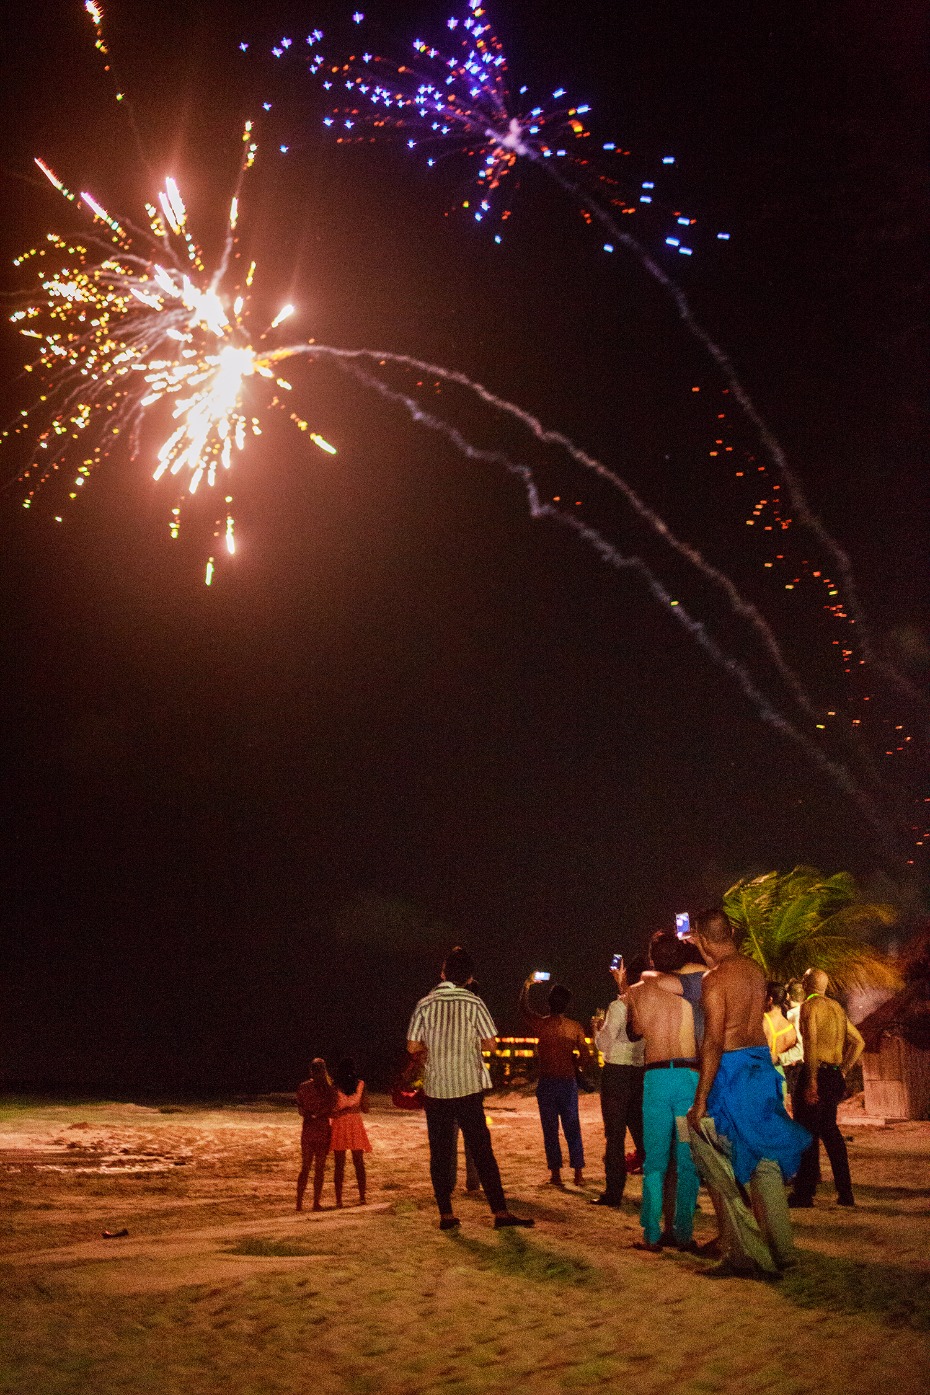 Firework show on the beach